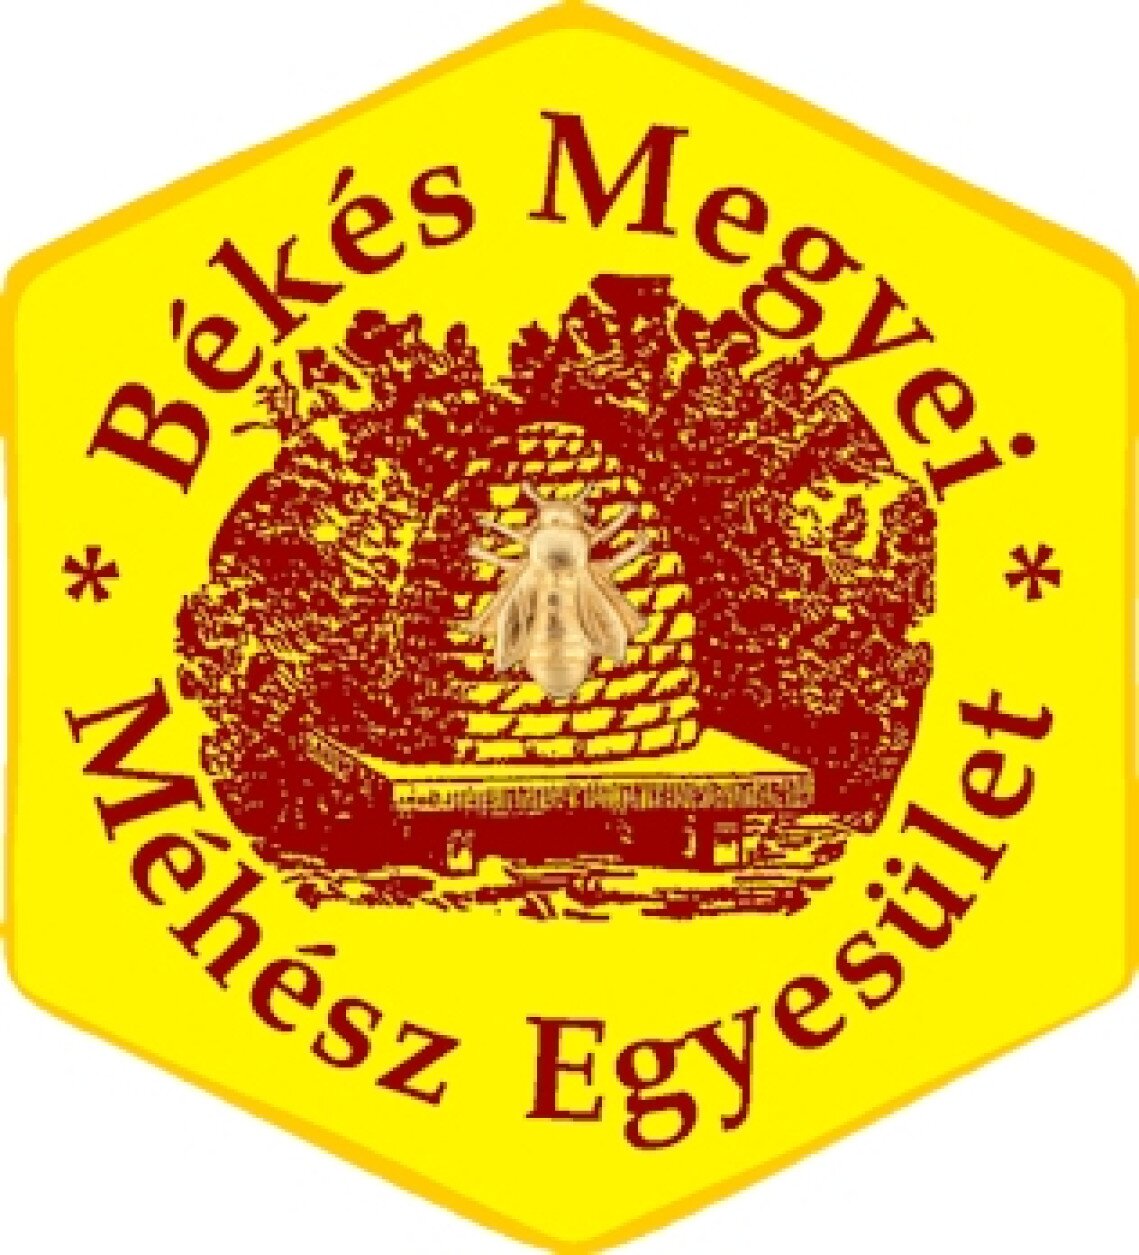 bekes-megyei-mehesz-egyesulet-mezfesztival-gyula-logo.jpg